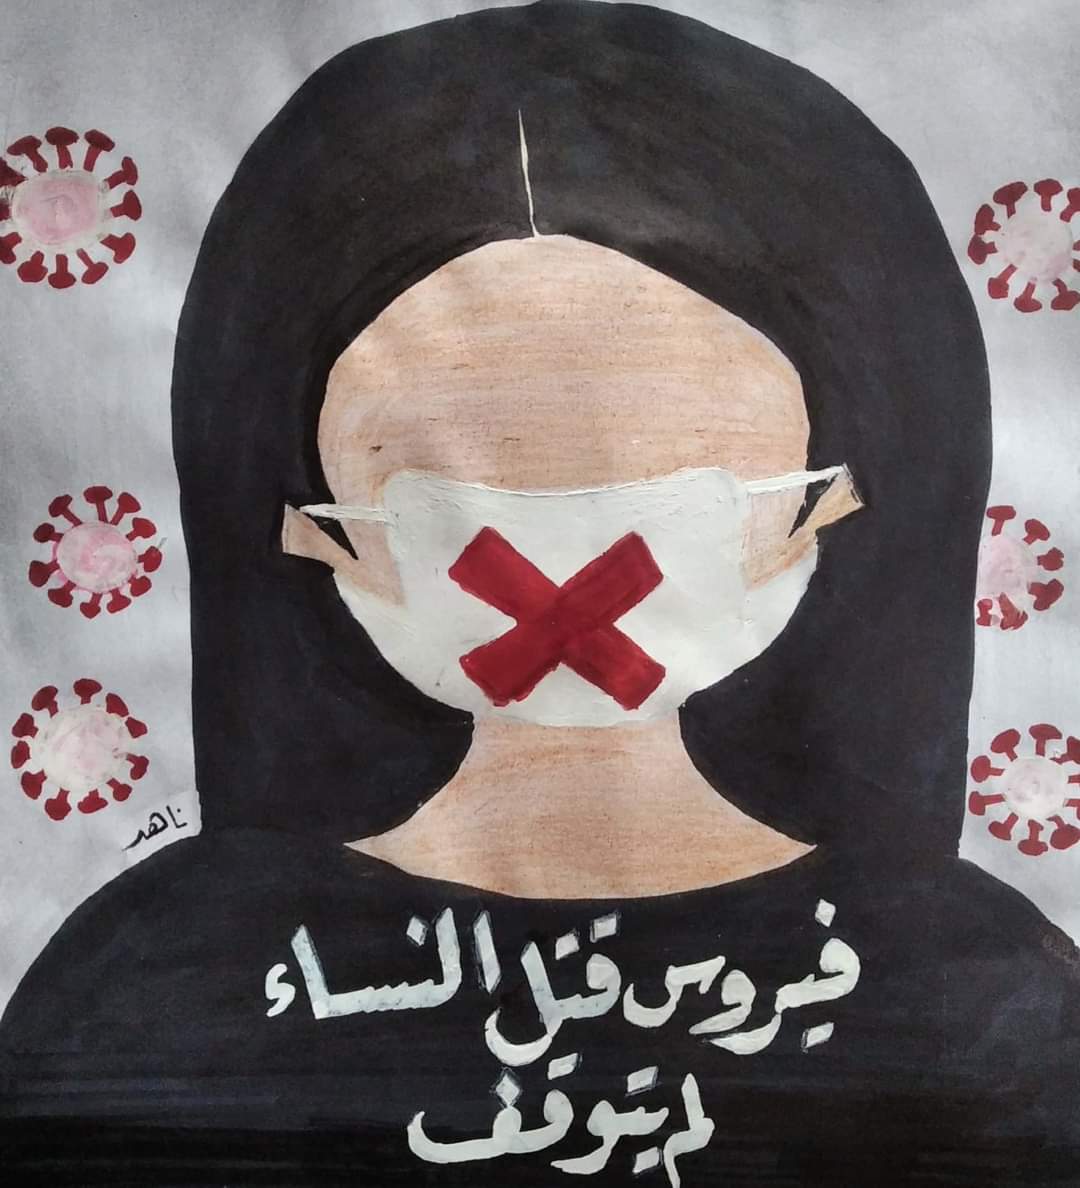 إحدى الرسومات المشاركة في حملة مش شرف